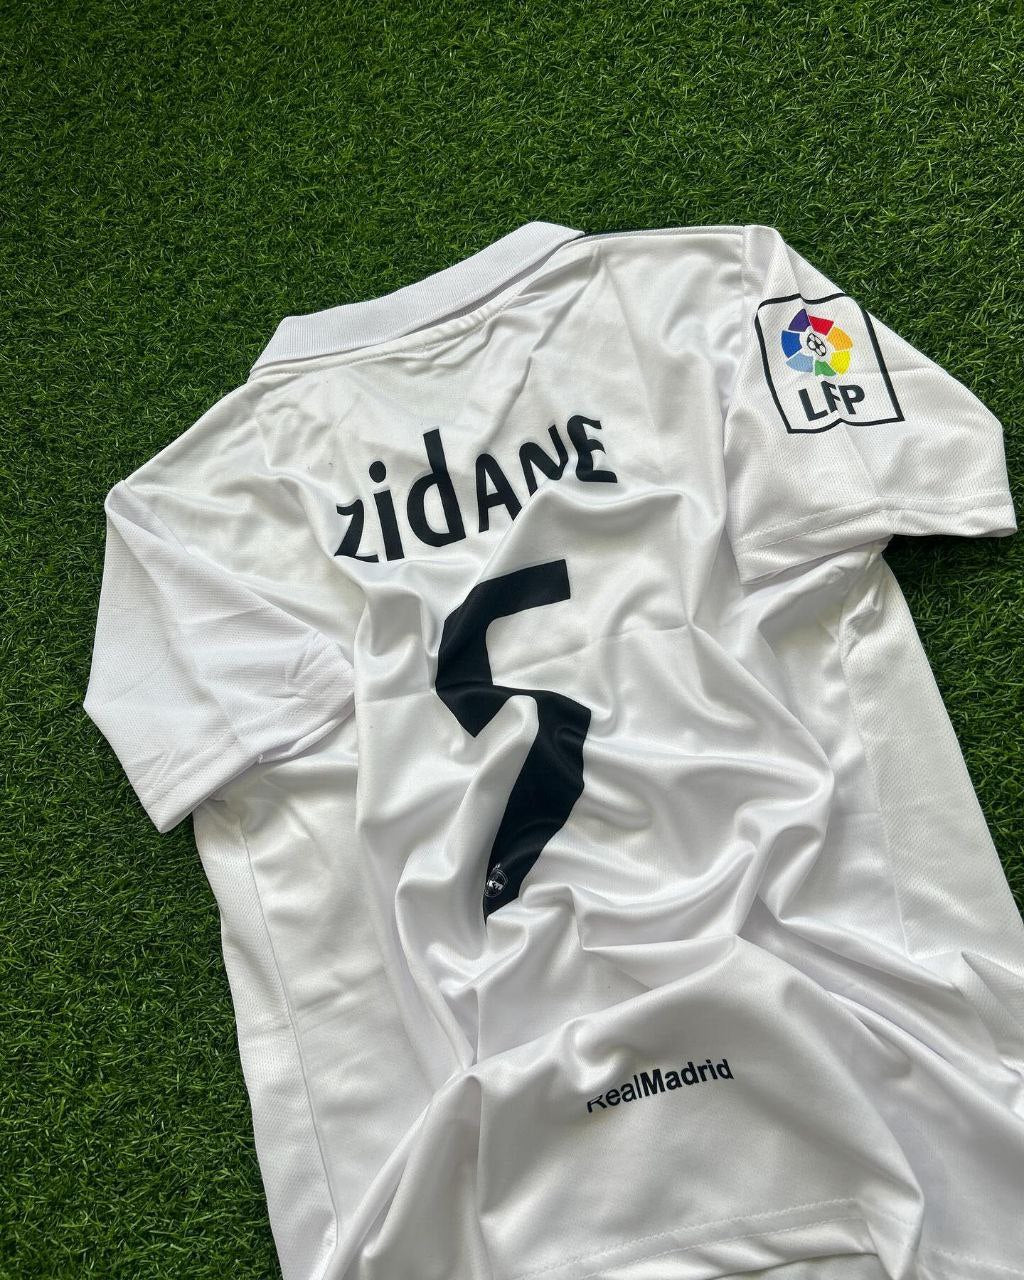 Zinédine Zidane, Real Madrid, weißes Retro-Trikot